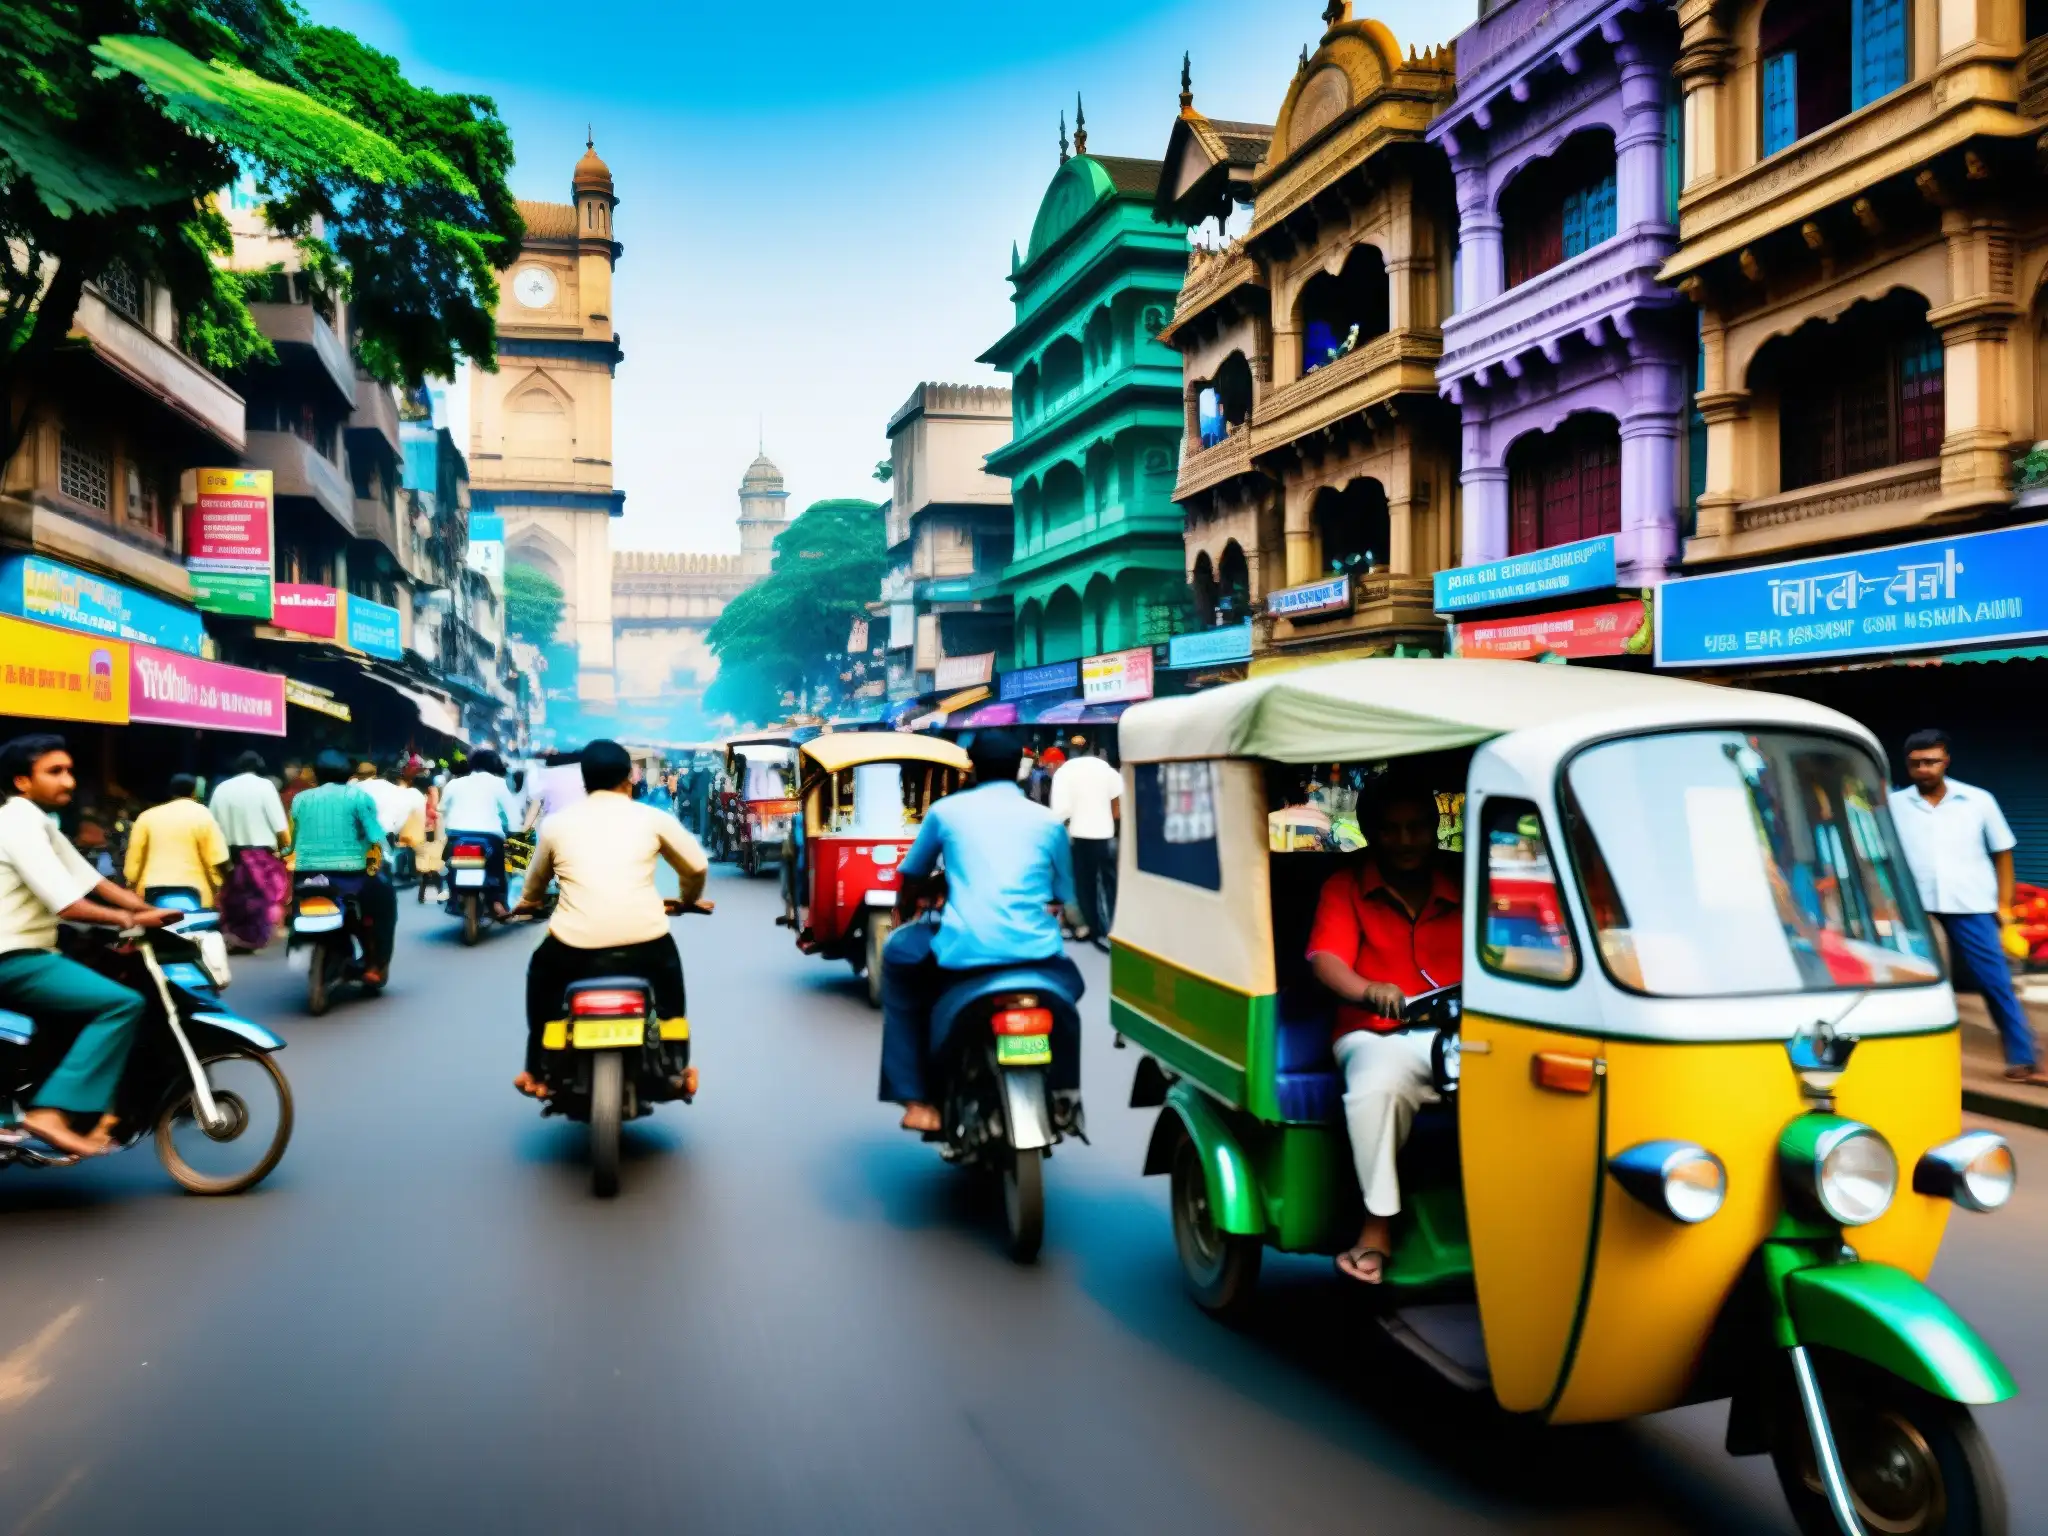 Una bulliciosa calle de Bombay, India, llena de colores vibrantes y elementos tradicionales y modernos como rickshaws, motocicletas y peatones